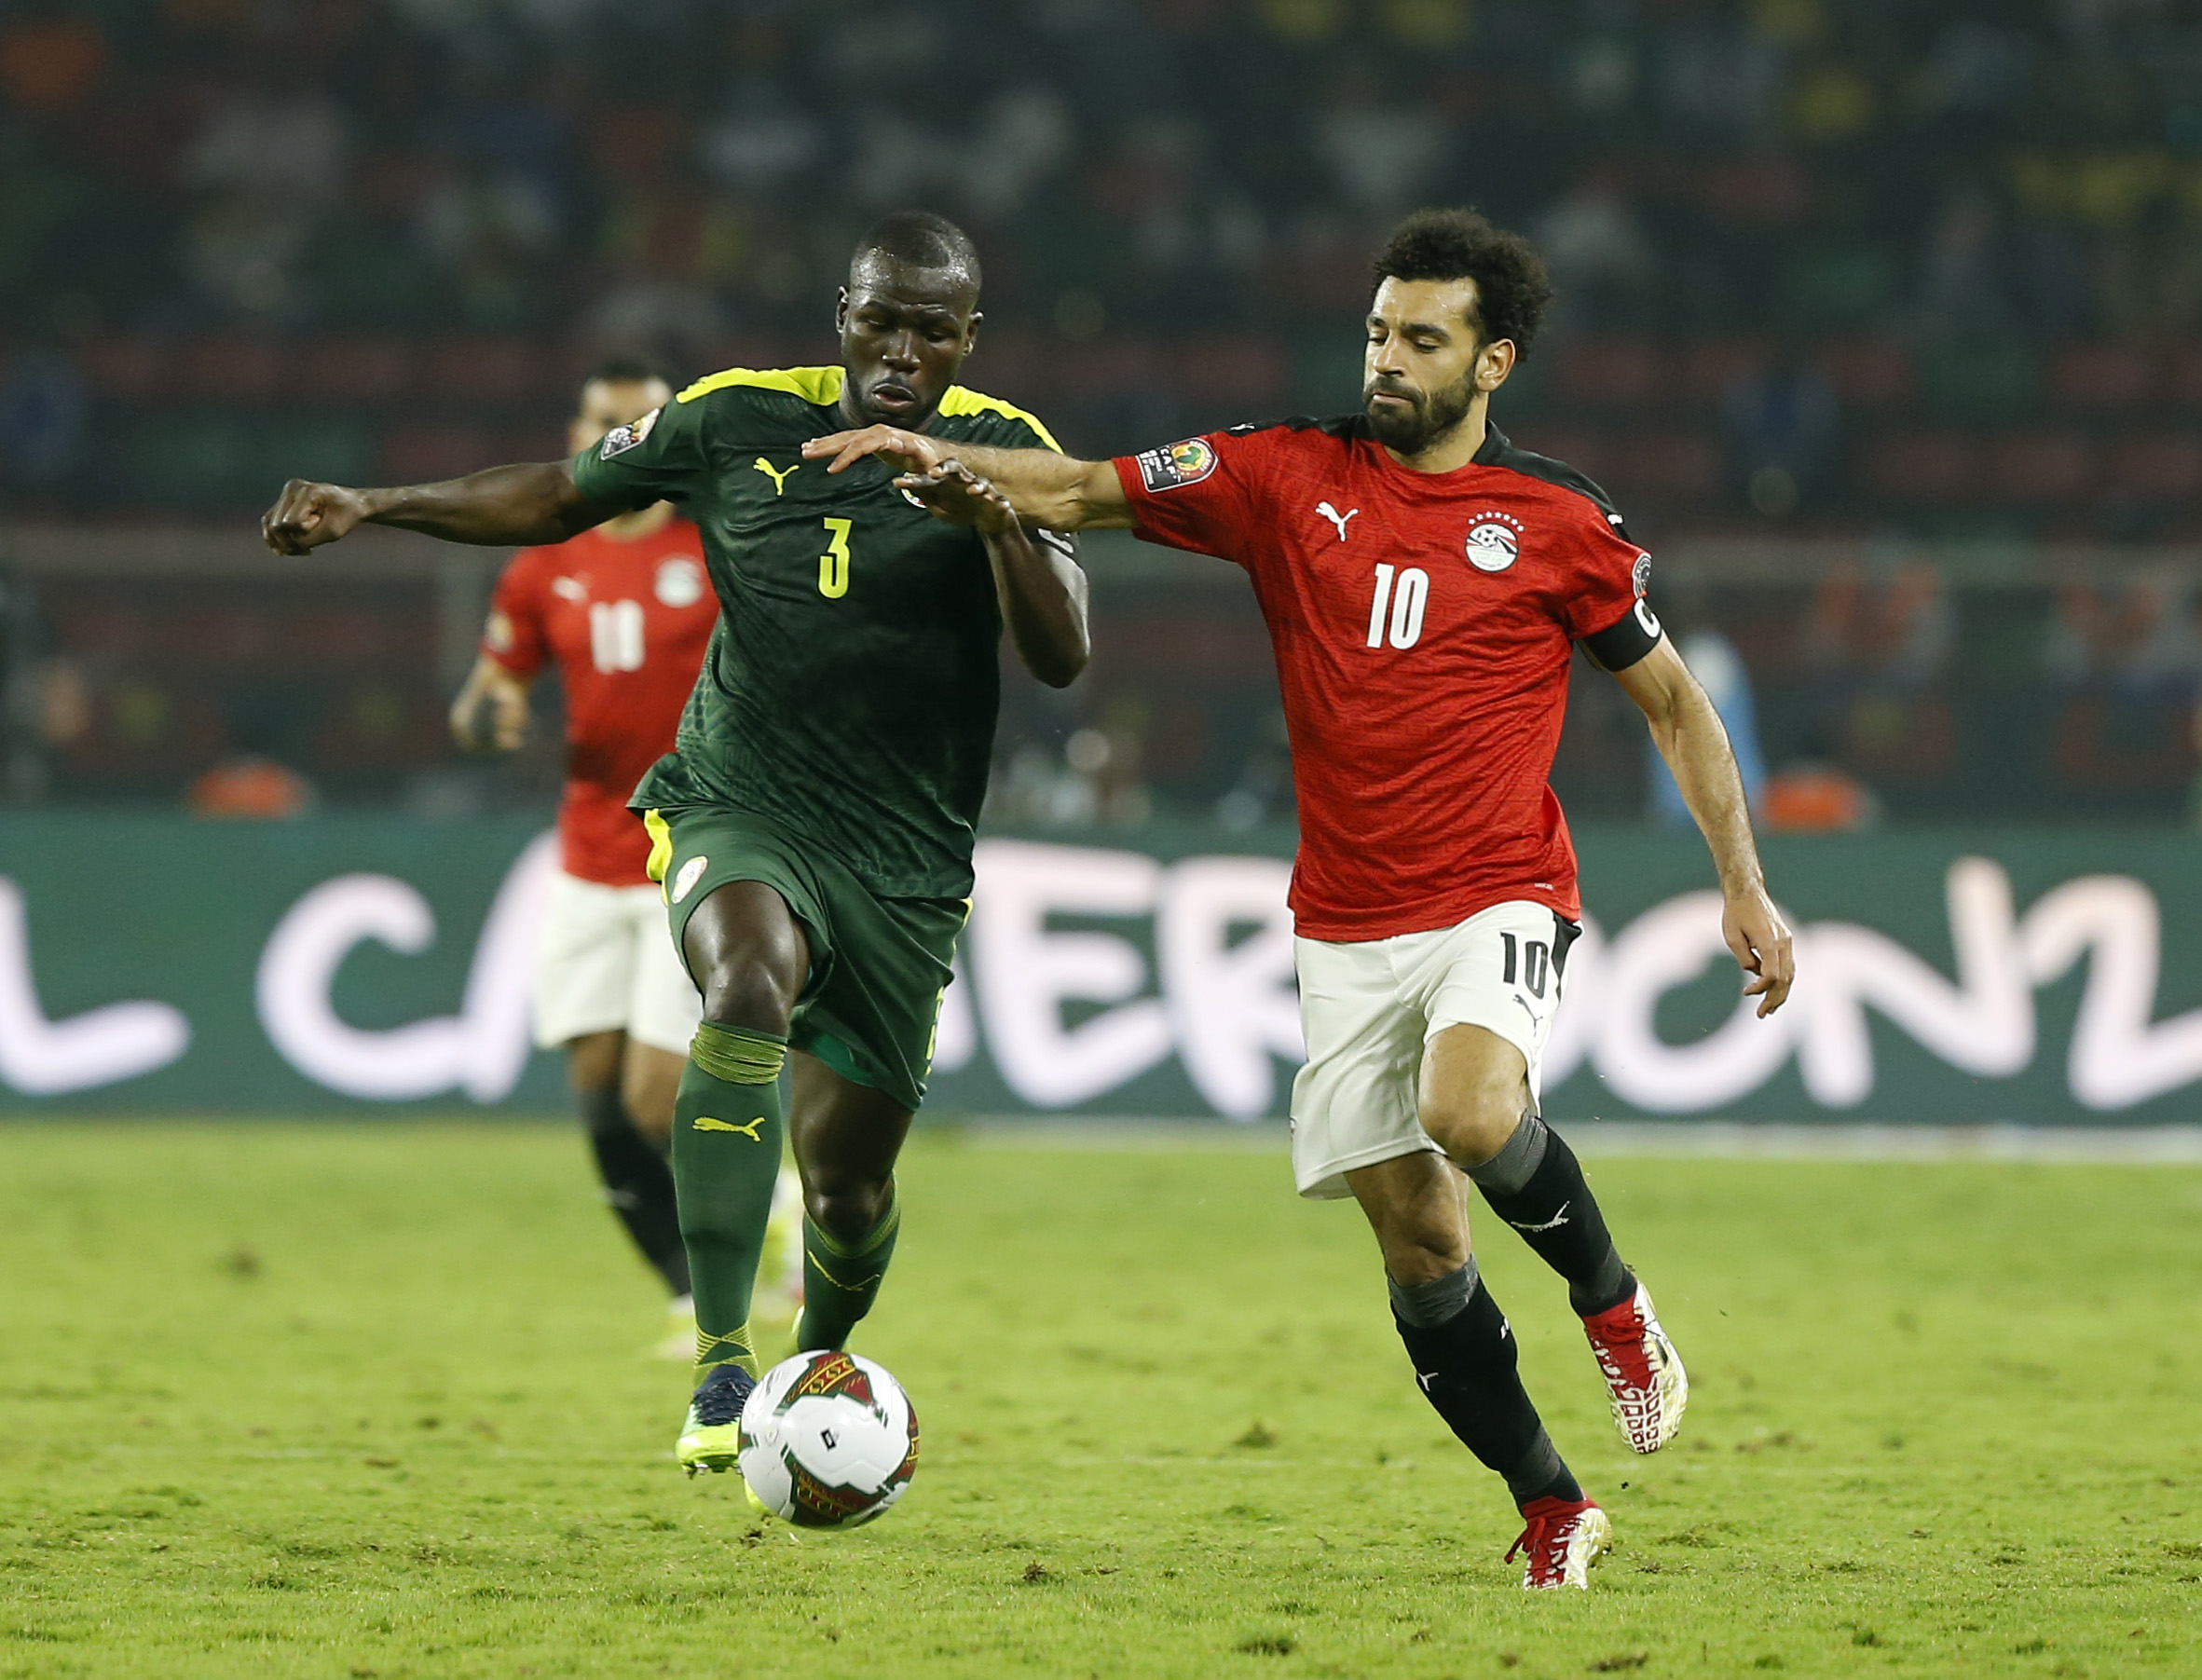 Egipto vs Senegal EN VIVO: Salah vs Mane